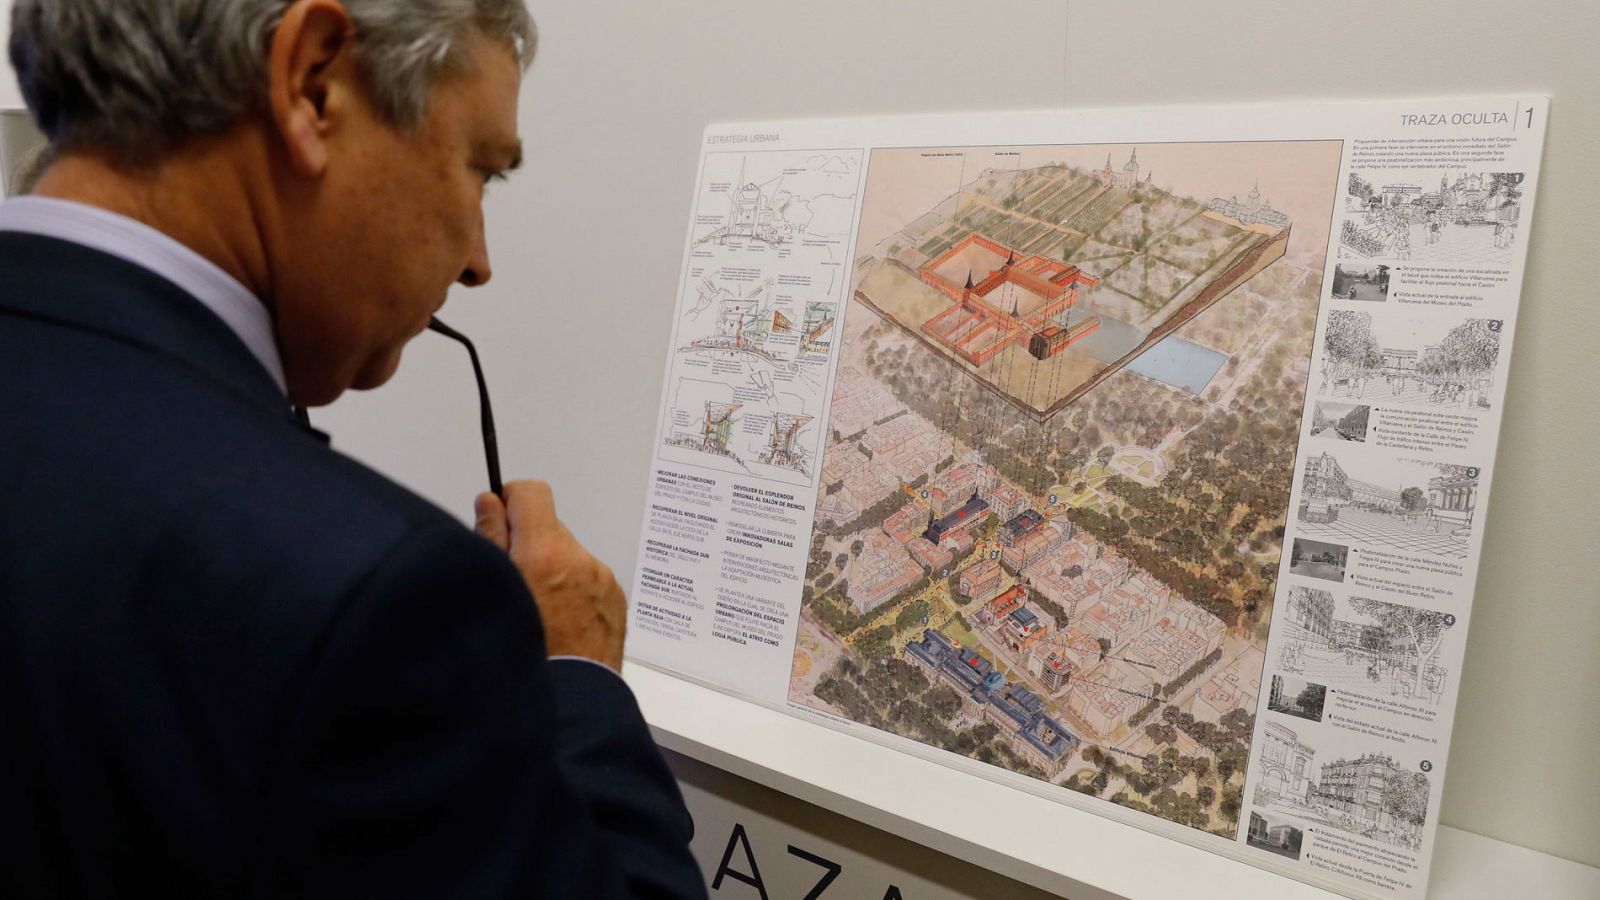 Norman Foster, arquitecto de la nueva ampliación del Prado: "Queremos crear una espacio público acogedor"